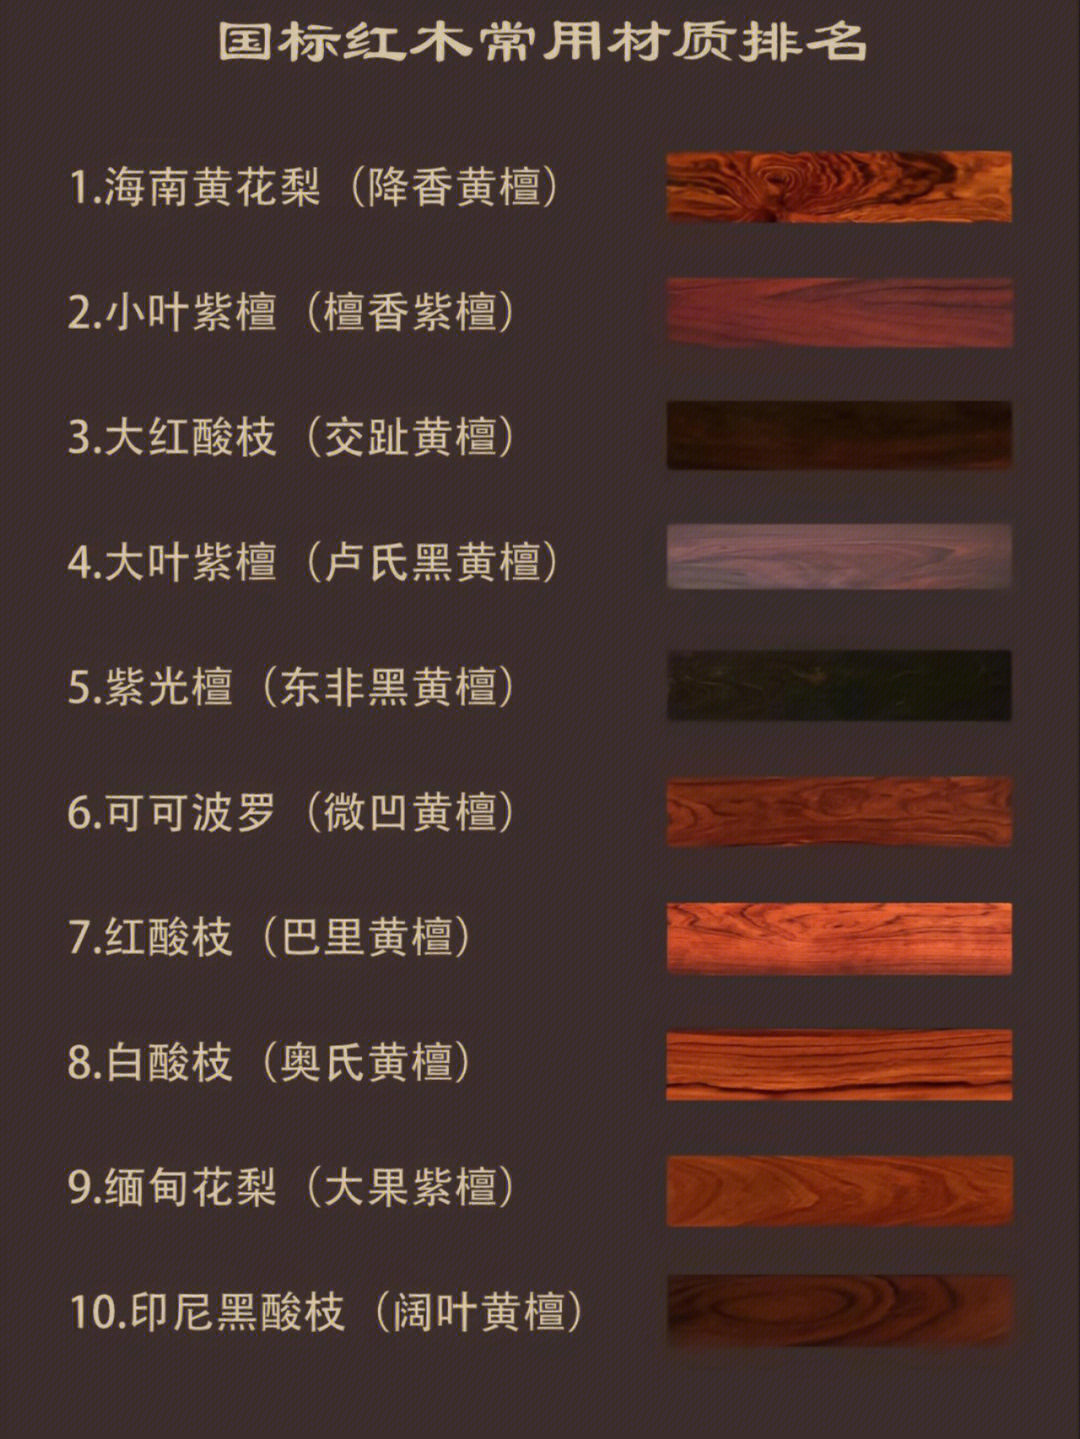 红木种类分类图片